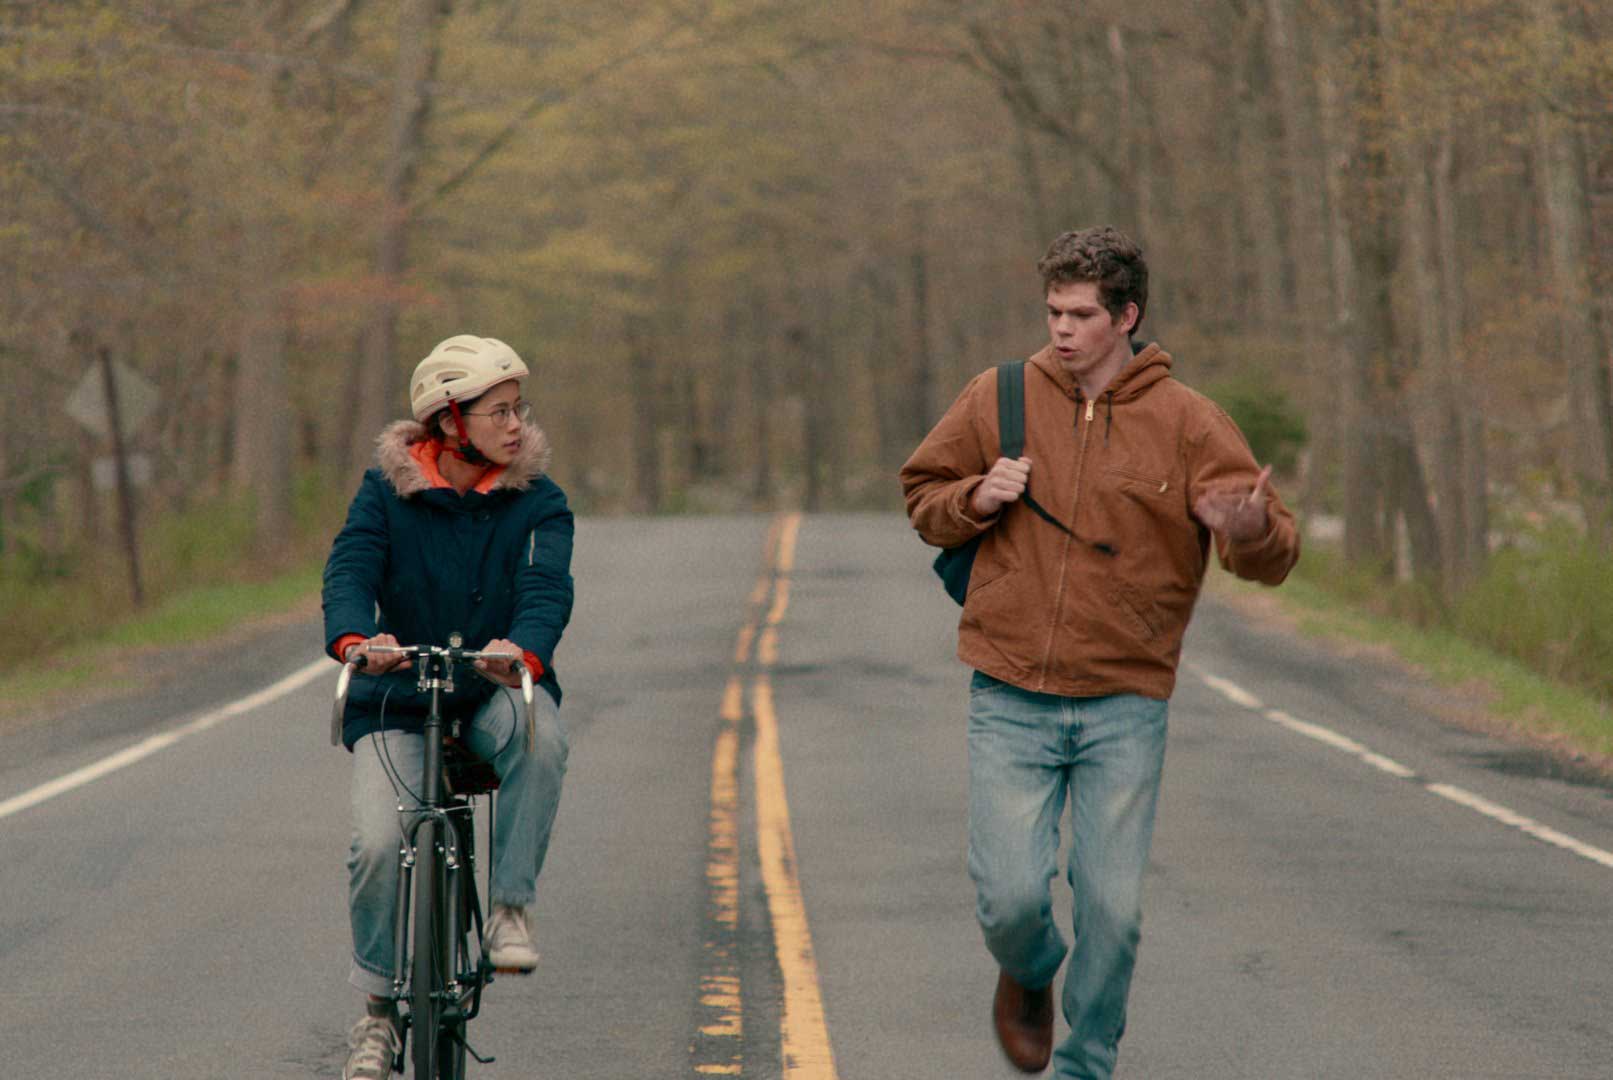 فیلم The Half of It صحبت دو دوست در میان خیابان واقع احاطه شده با درختان در حال دوچرخه سواری و پیاده روی